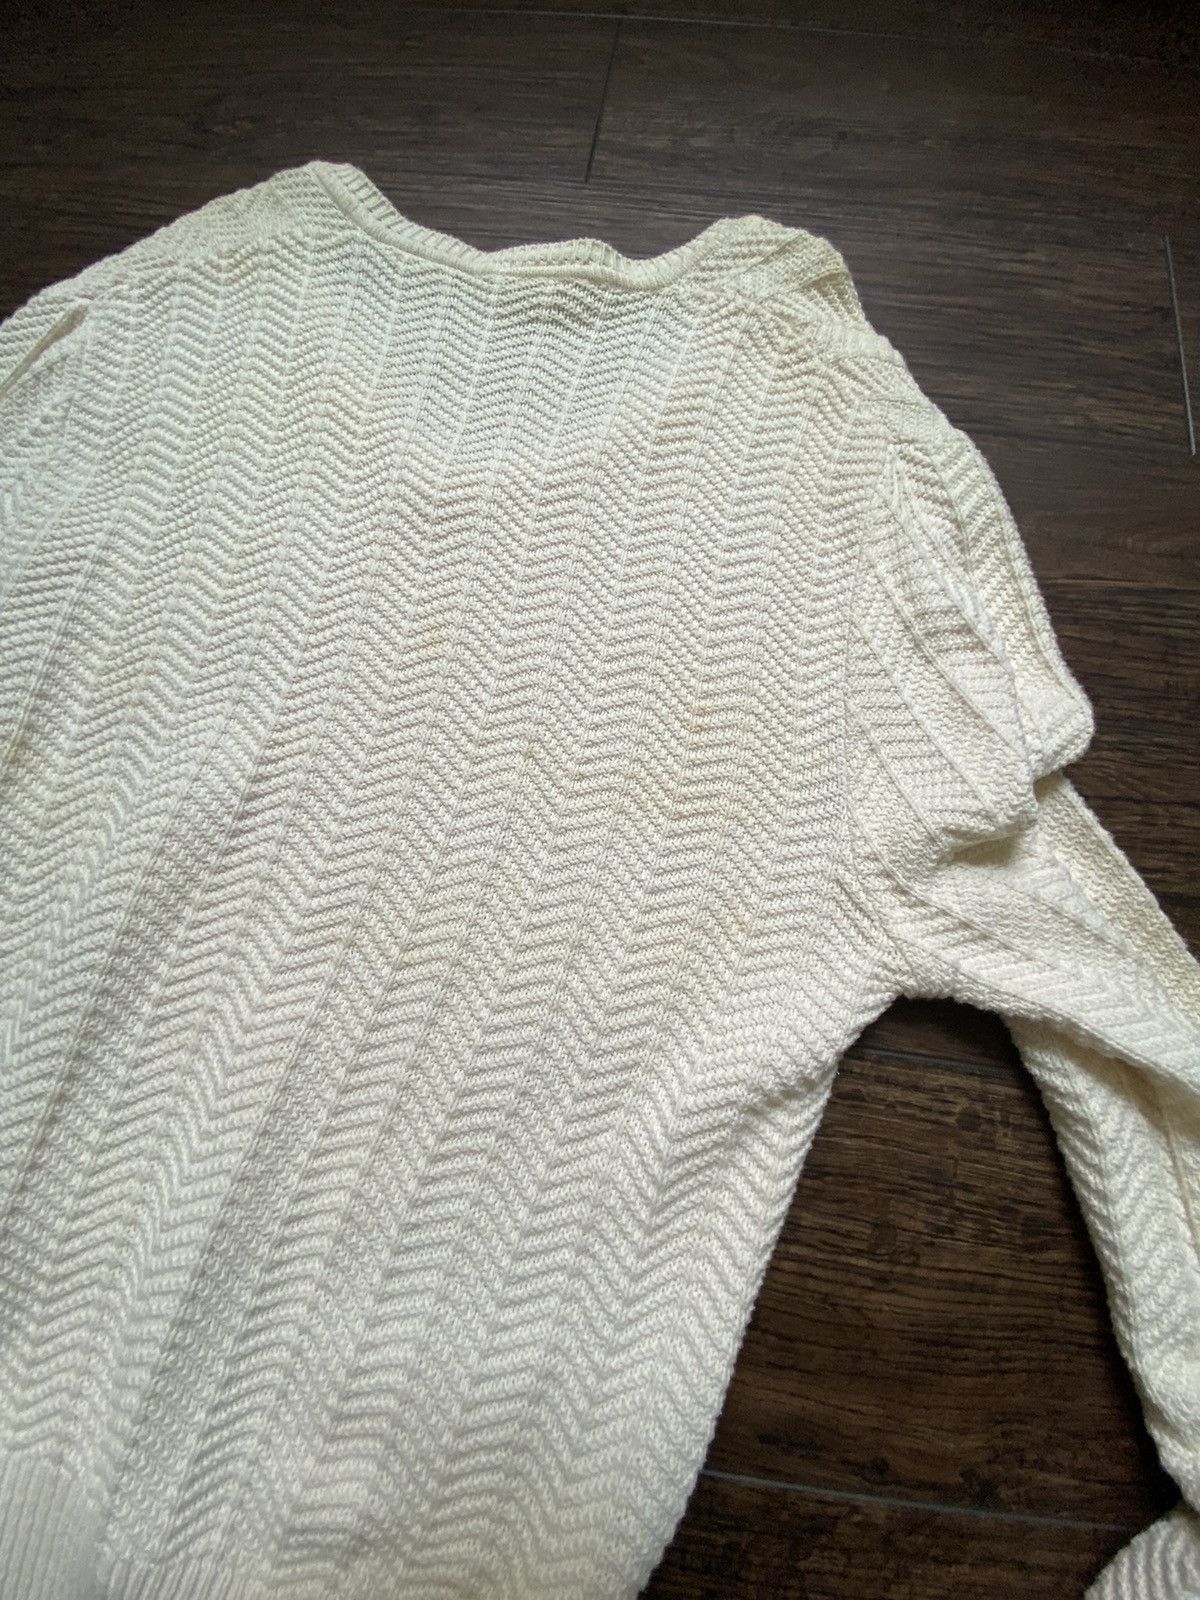 Vintage Vintage 60s Lacoste Knit Sweatshirt Size US M / EU 48-50 / 2 - 5 Thumbnail